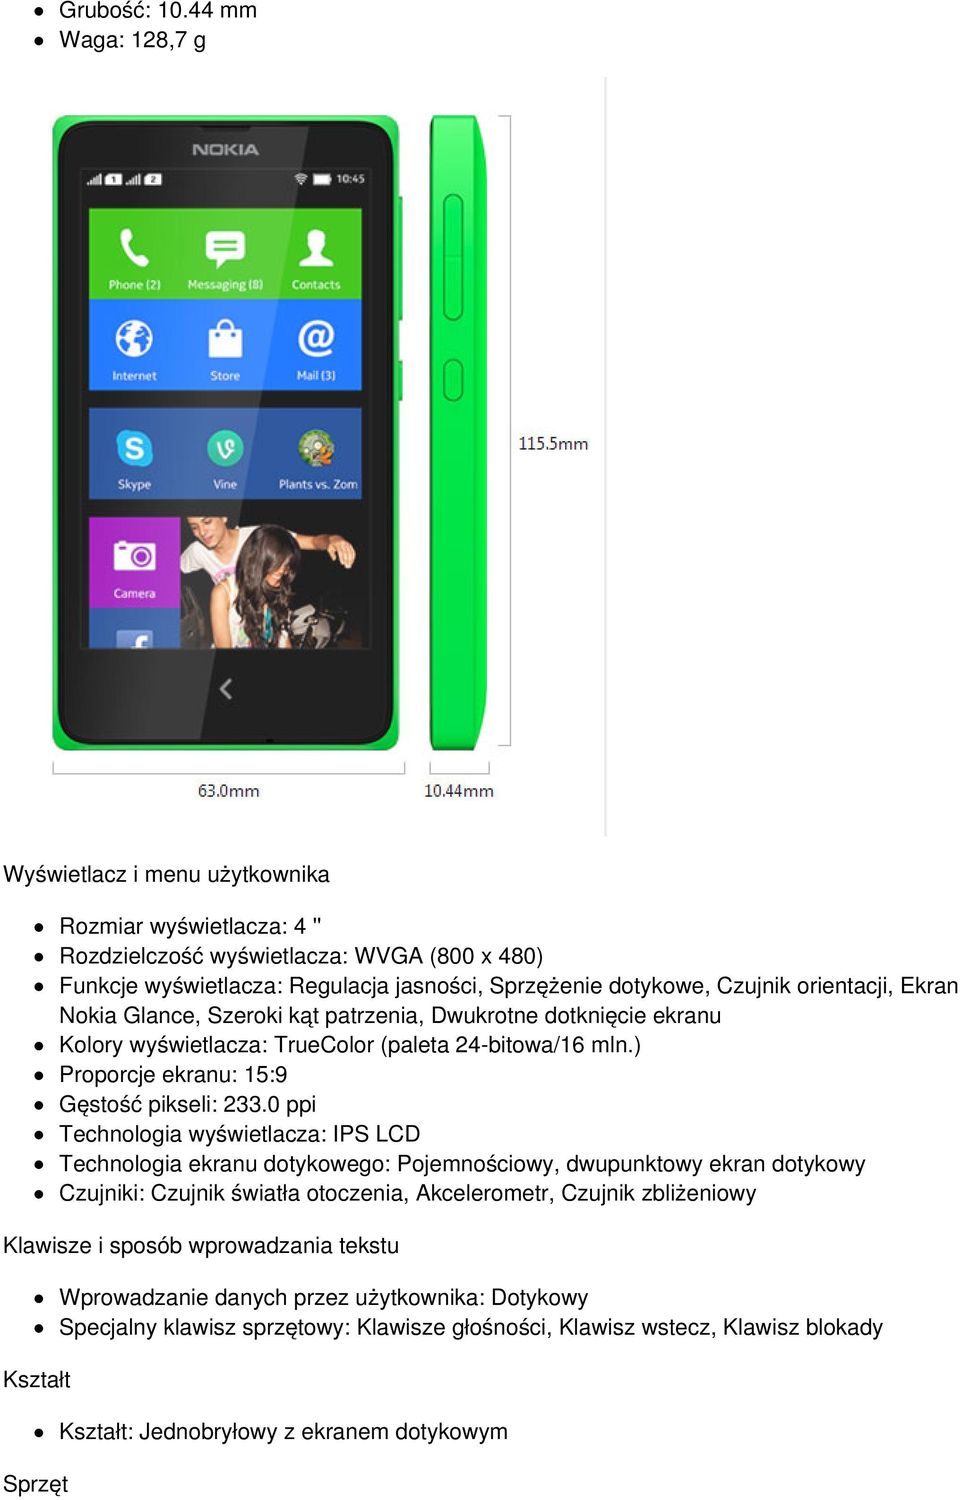 orientacji, Ekran Nokia Glance, Szeroki kąt patrzenia, Dwukrotne dotknięcie ekranu Kolory wyświetlacza: TrueColor (paleta 24-bitowa/16 mln.) Proporcje ekranu: 15:9 Gęstość pikseli: 233.